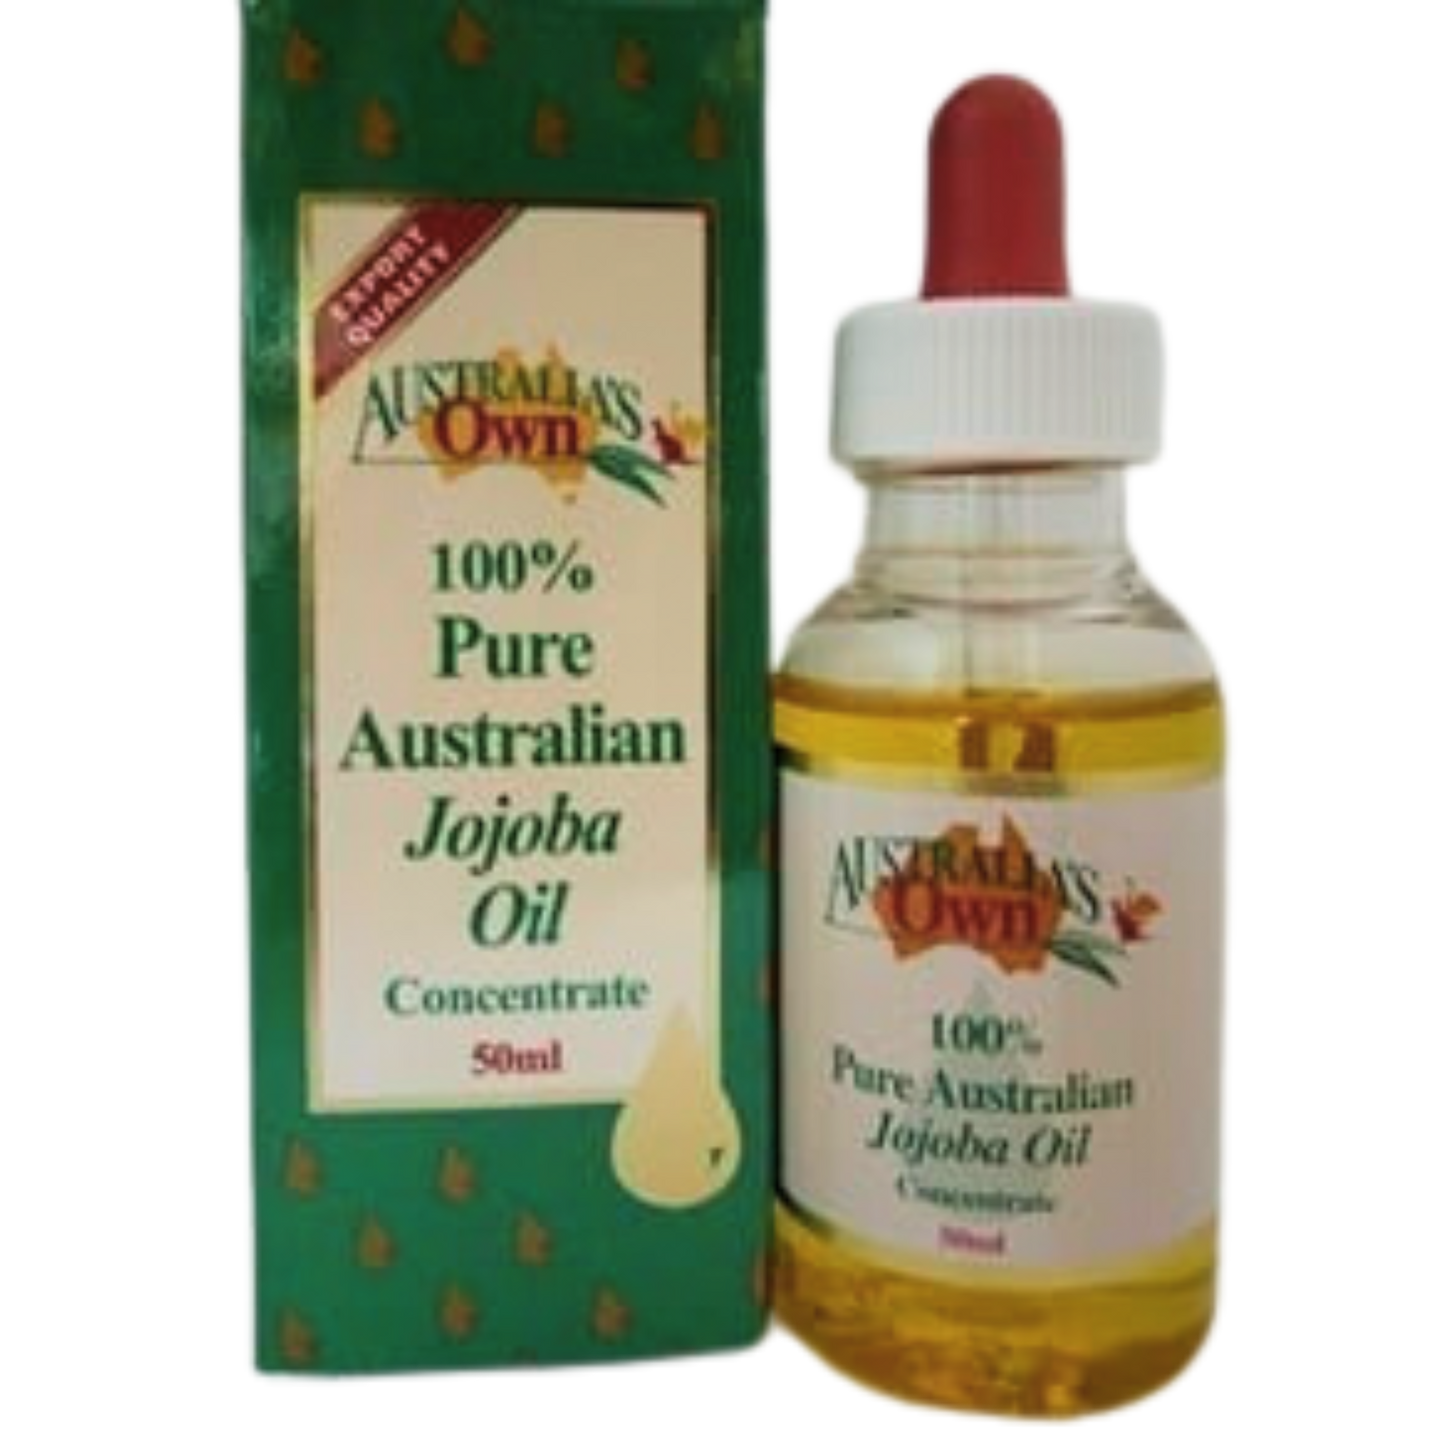 Australia’s Own® Jojoba Oil – 100% Pure – Australian – 50ml